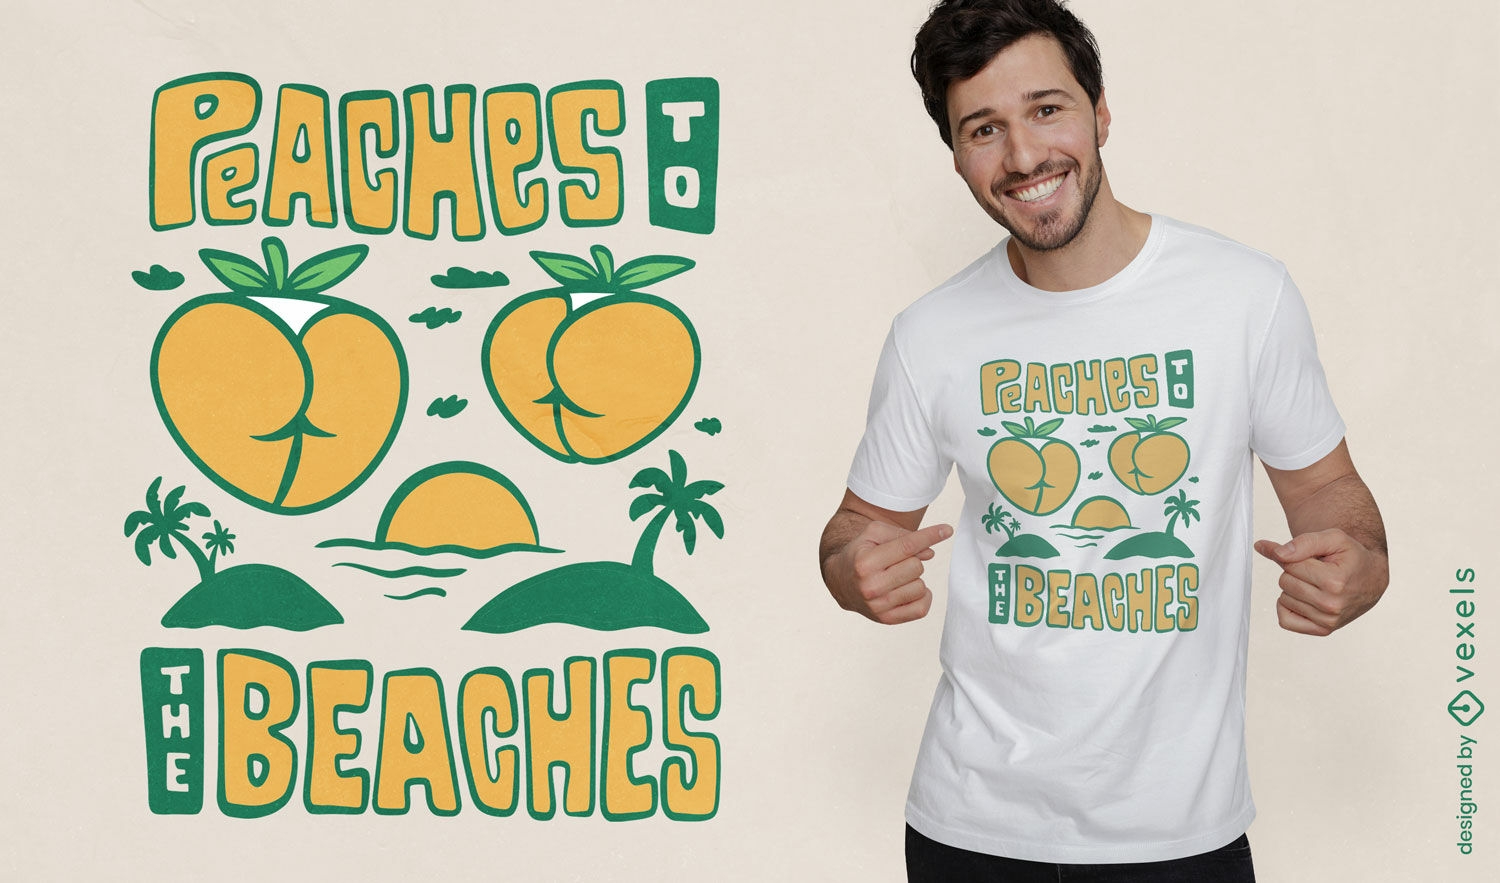 Peaches to the beaches t-shirt design